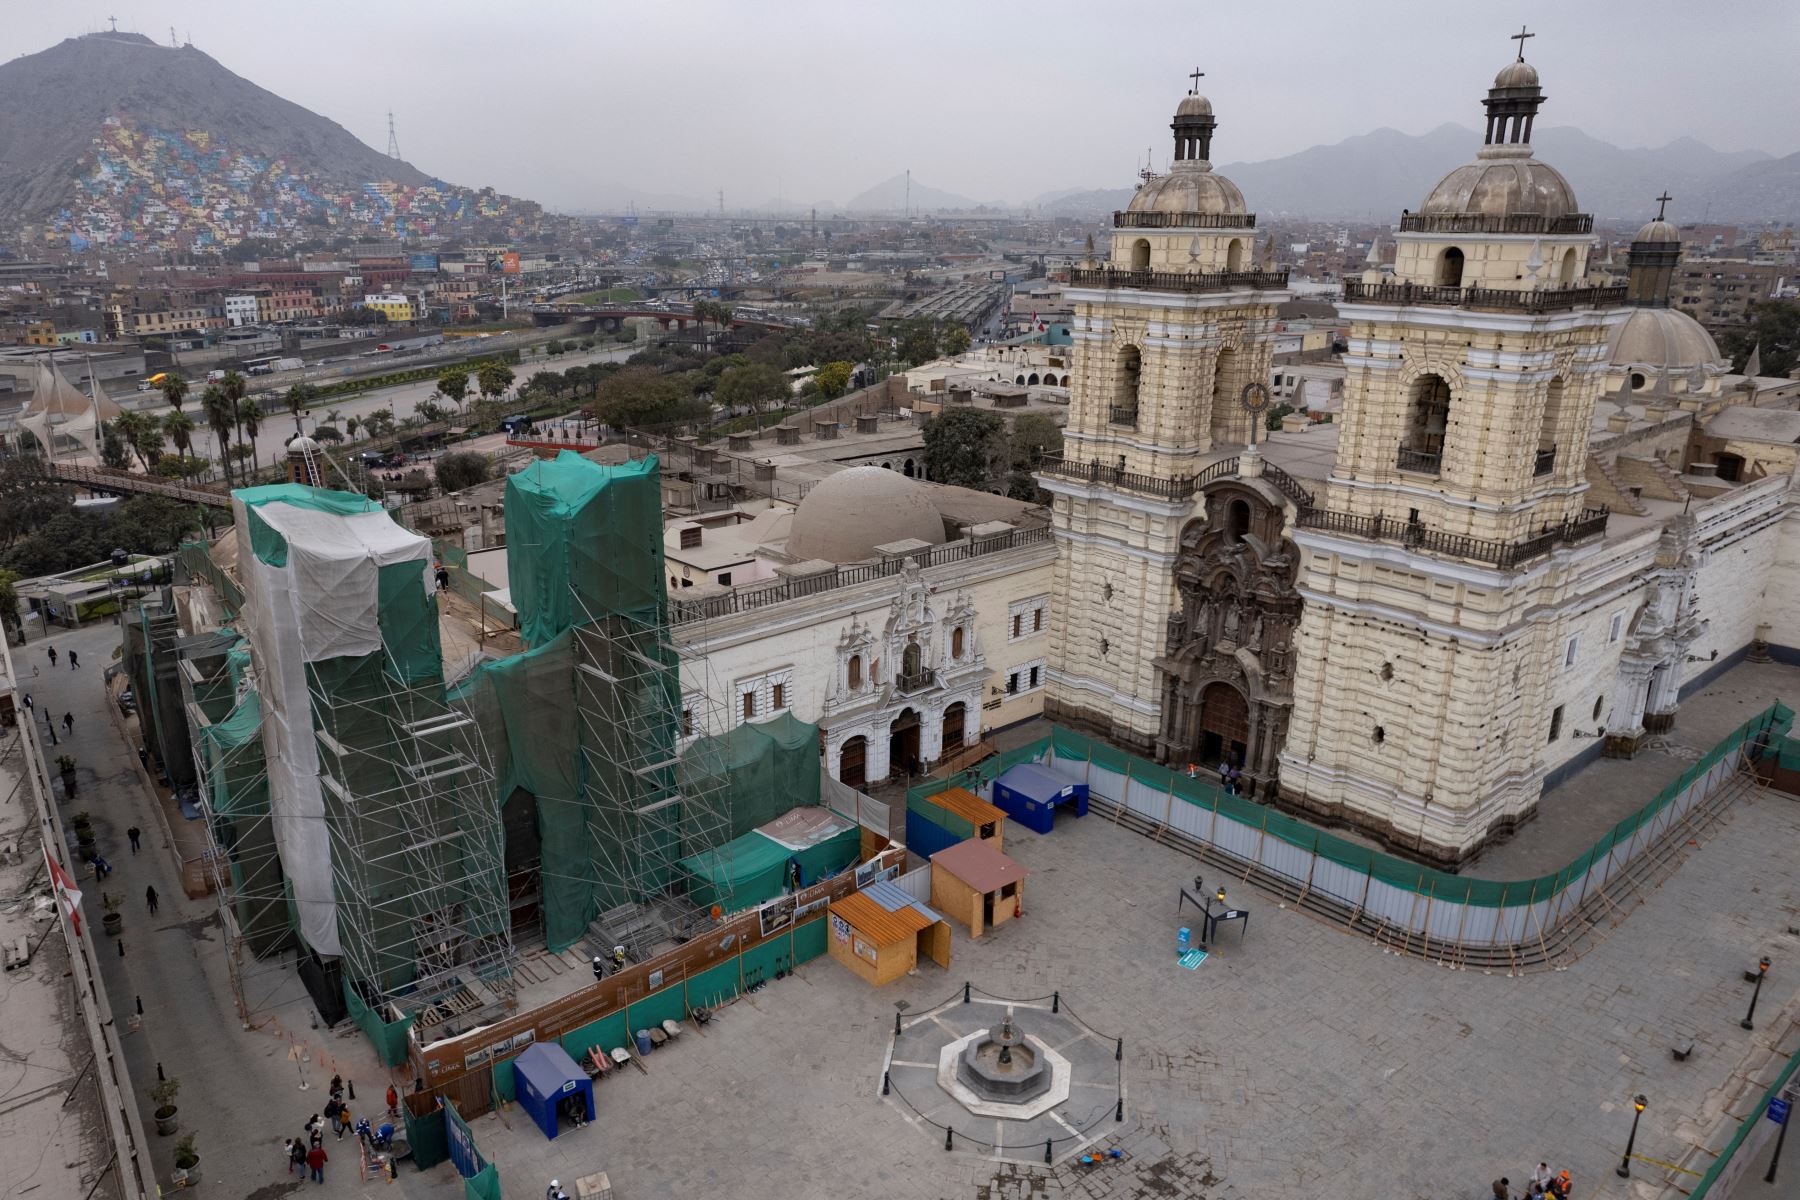 Cadalsos cubren el Santuario de Nuestra Señora de la Soledad  durante los trabajos de restauración, donde arqueólogos peruanos encontraron restos humanos enterrados en fosas comunes en catacumbas subterráneas en el centro histórico de Lima.
Foto: AFP